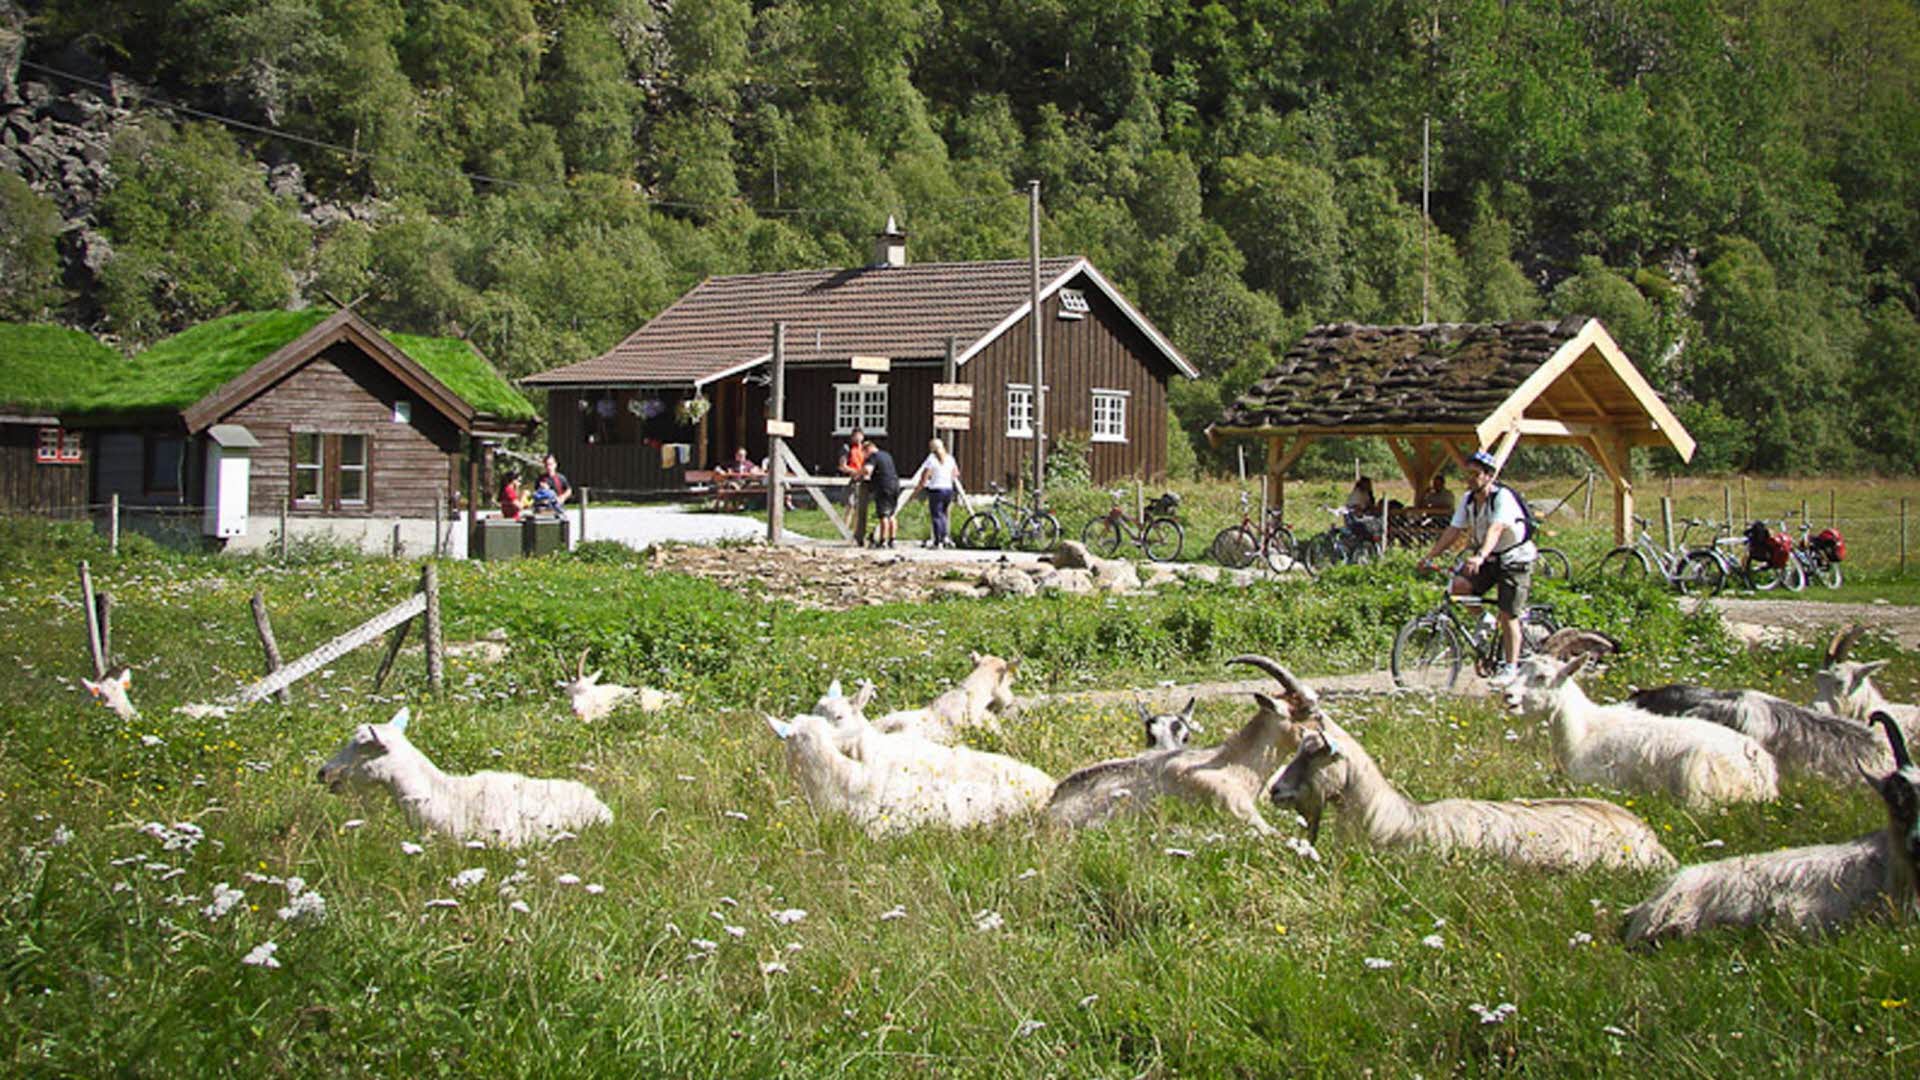 在弗洛姆斯达伦（Flåmsdalen）的拉拉罗萨斯托尔-伊斯特里（Rallarosa Stølsysteri），人们和山羊都在户外玩的十分开心